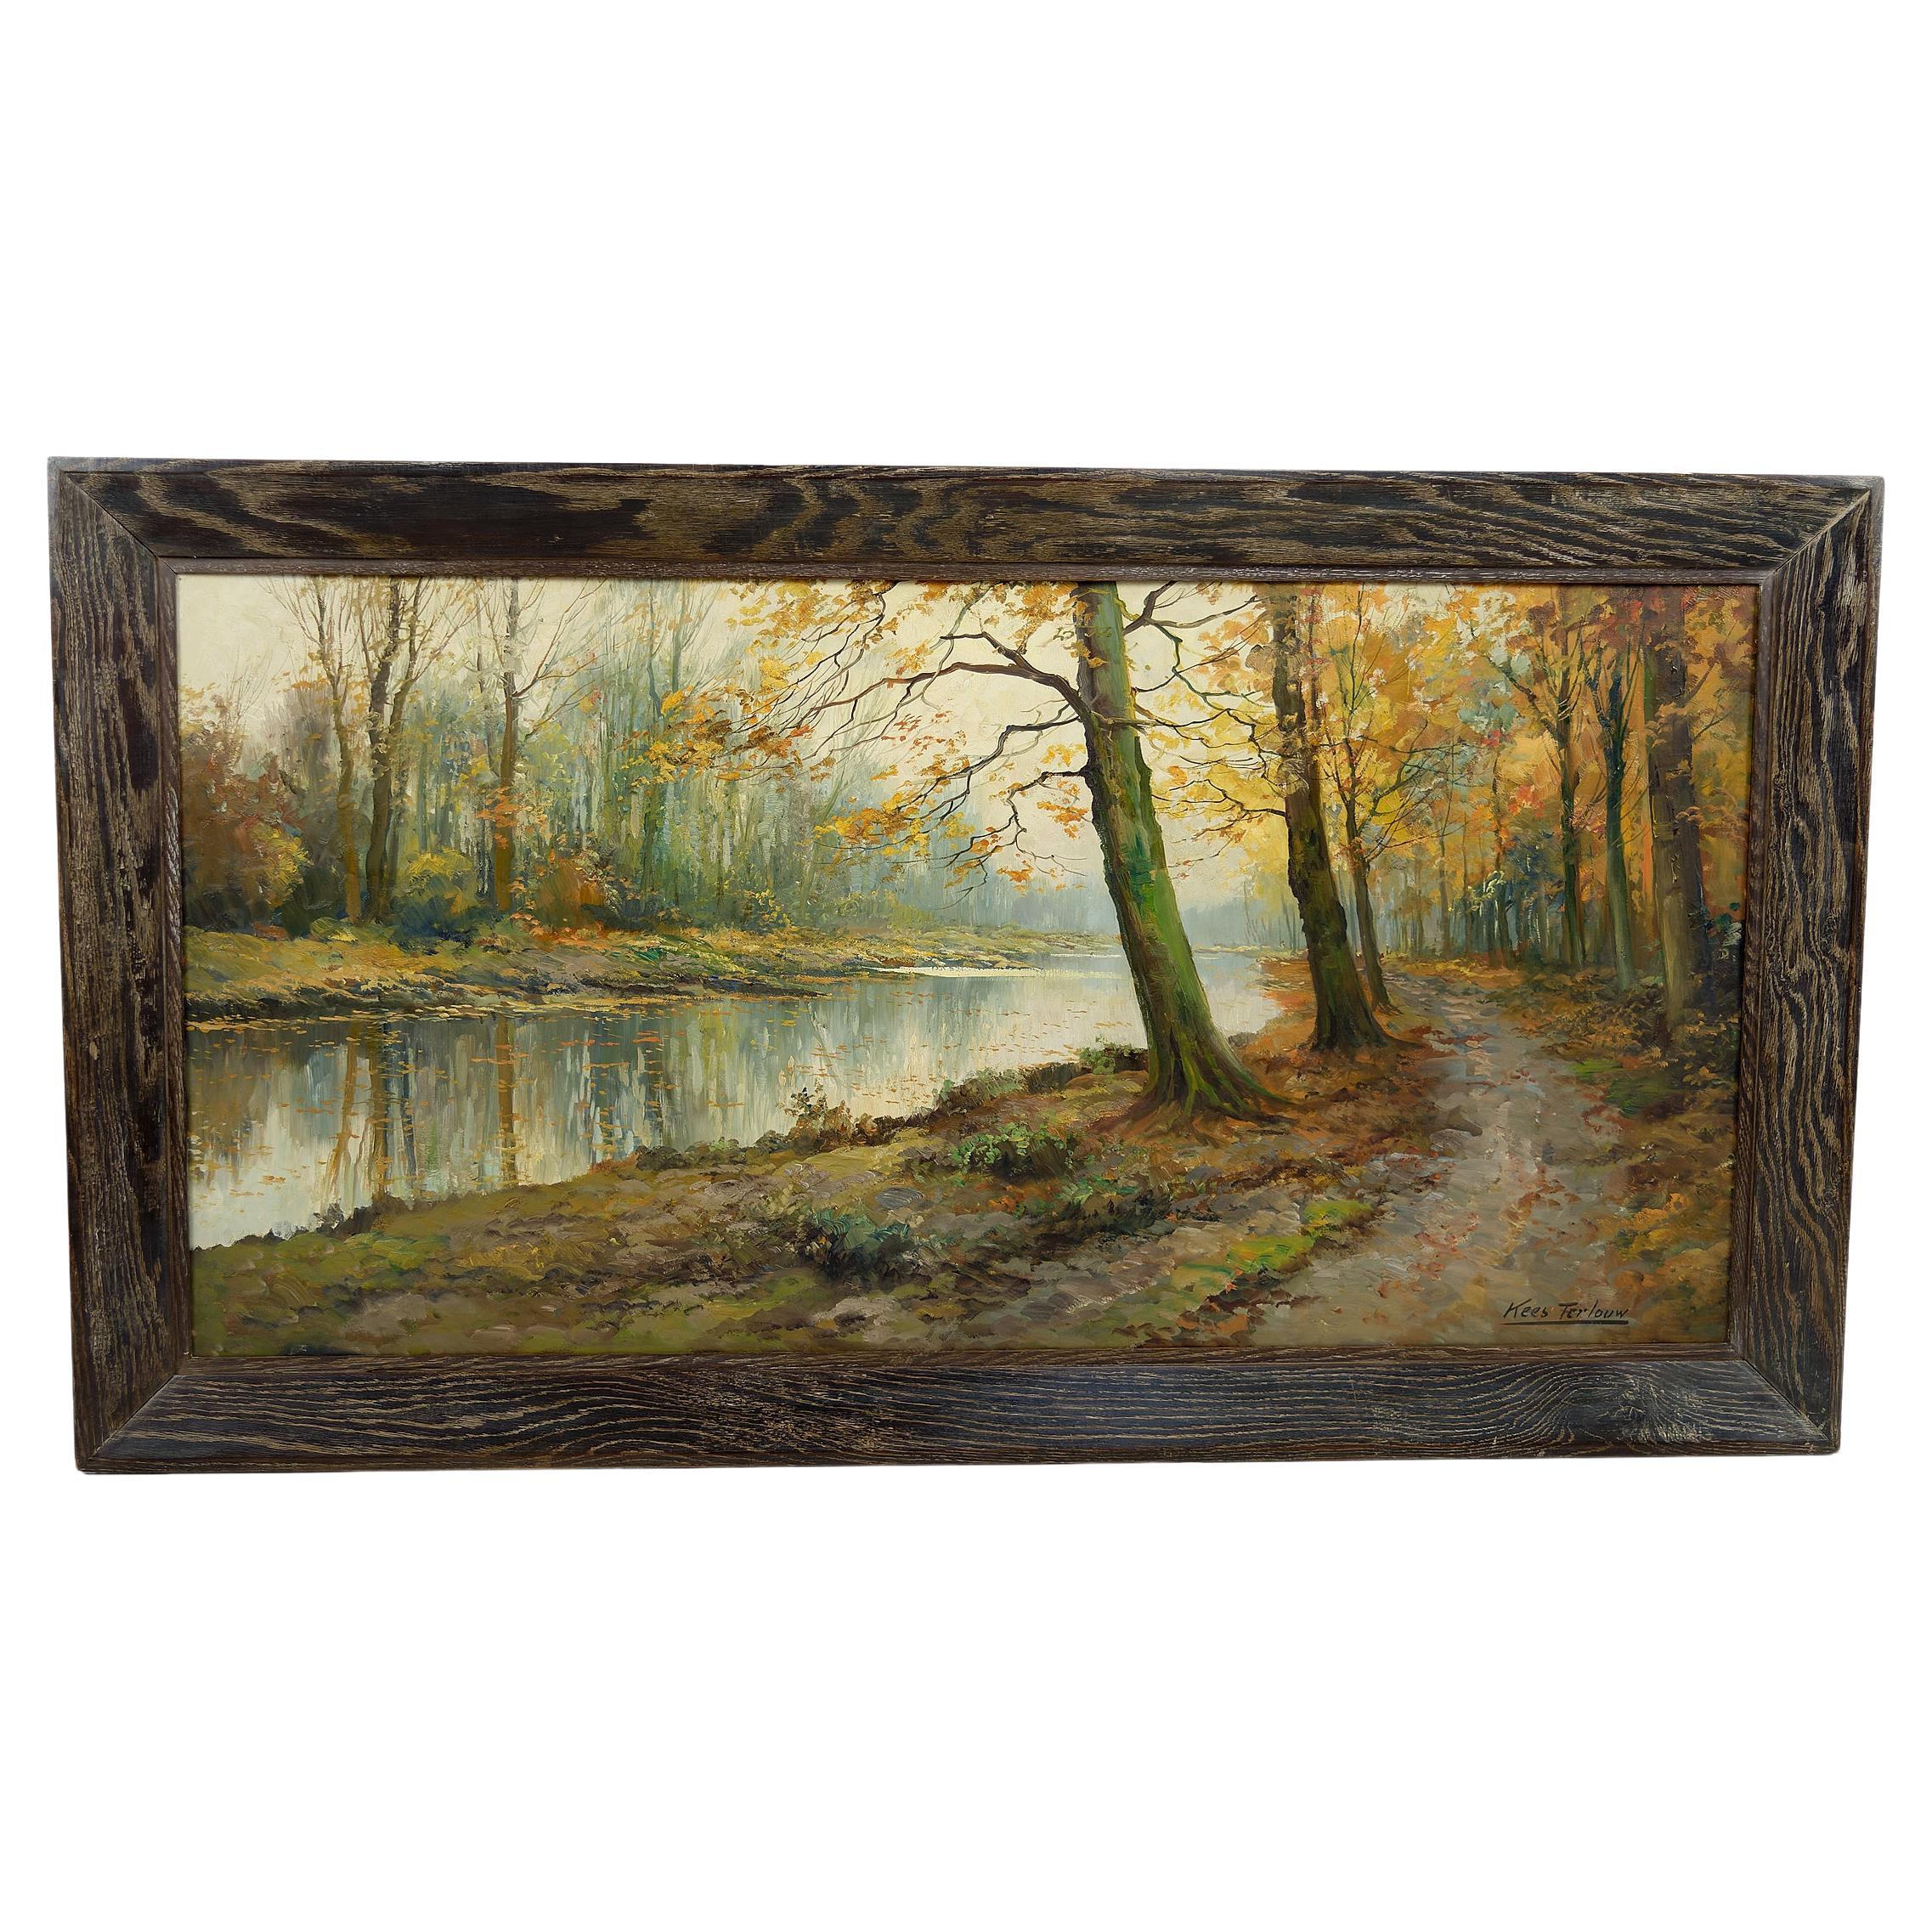 Paysage d'automne, peinture impressionniste de Kees Terlouw, France, vers 1910